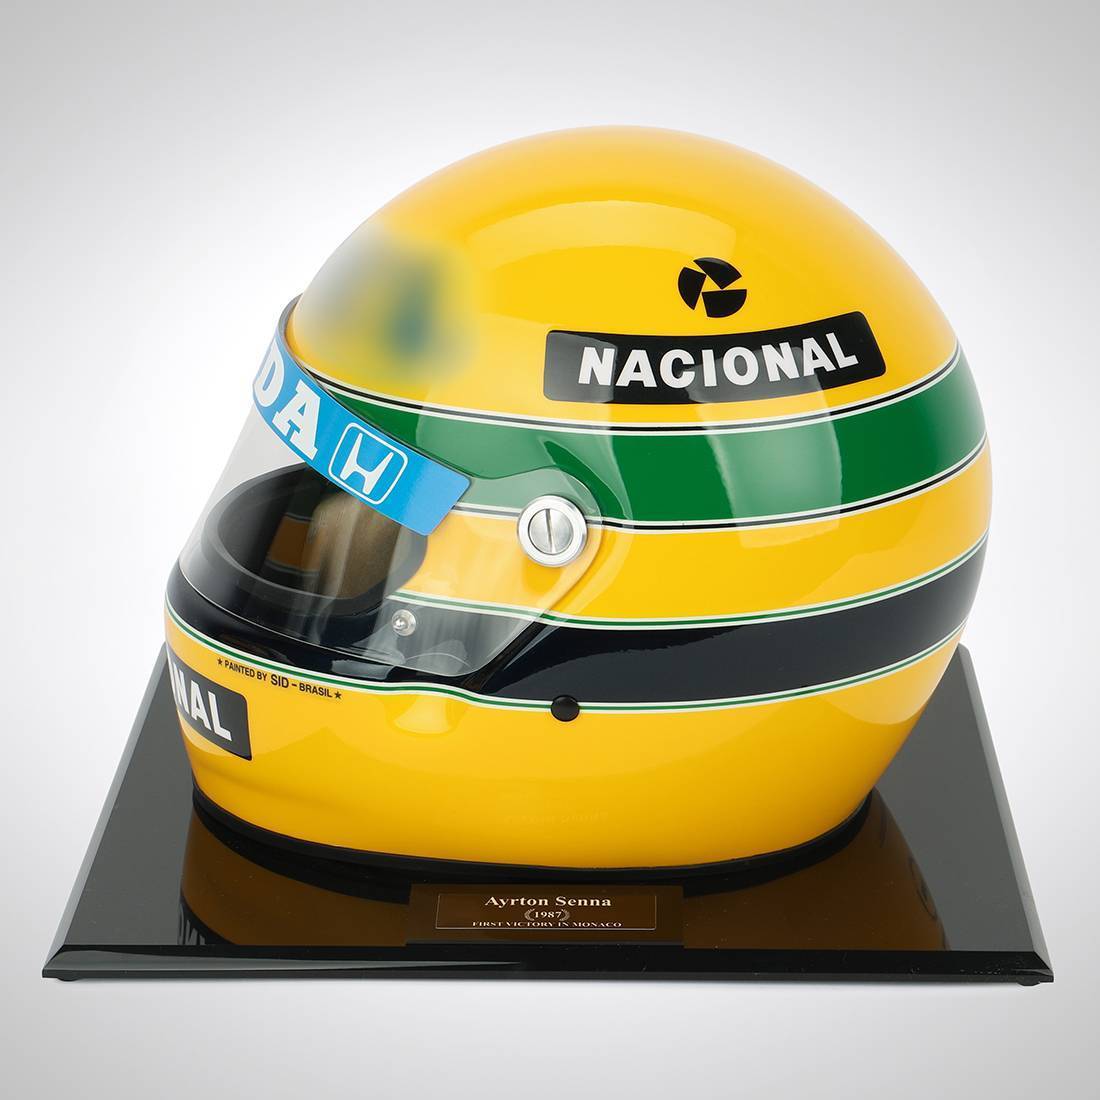 Officially Licensed Ayrton Senna 1987 Replica Helmet